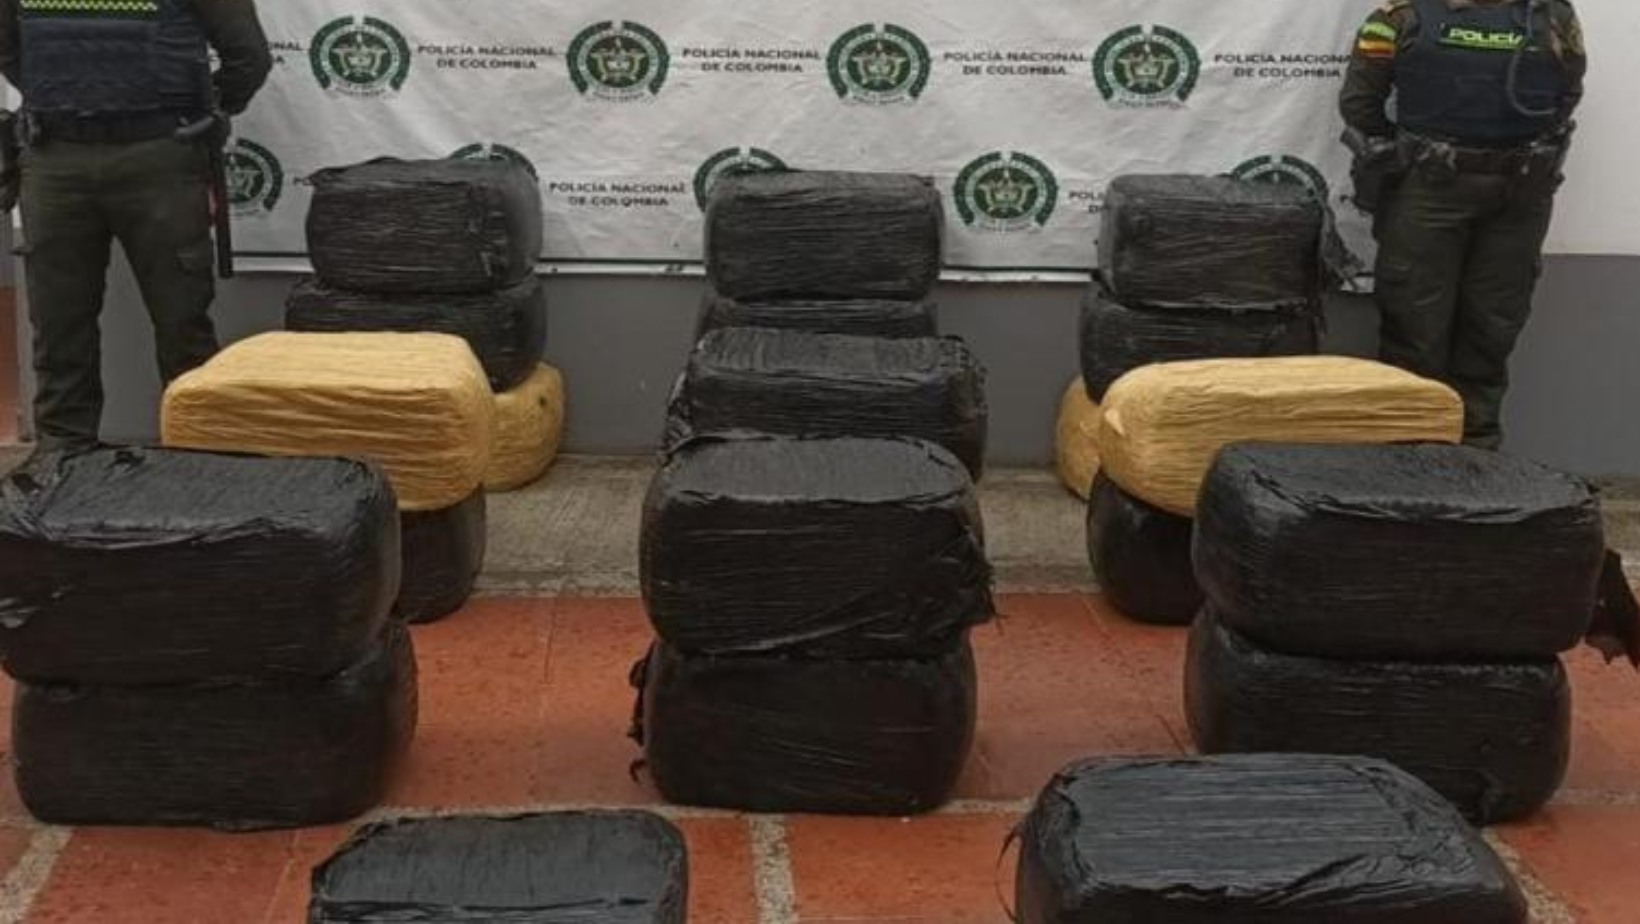 Incautan enorme cargamento de marihuana en Rovira valorado en 500 millones de pesos